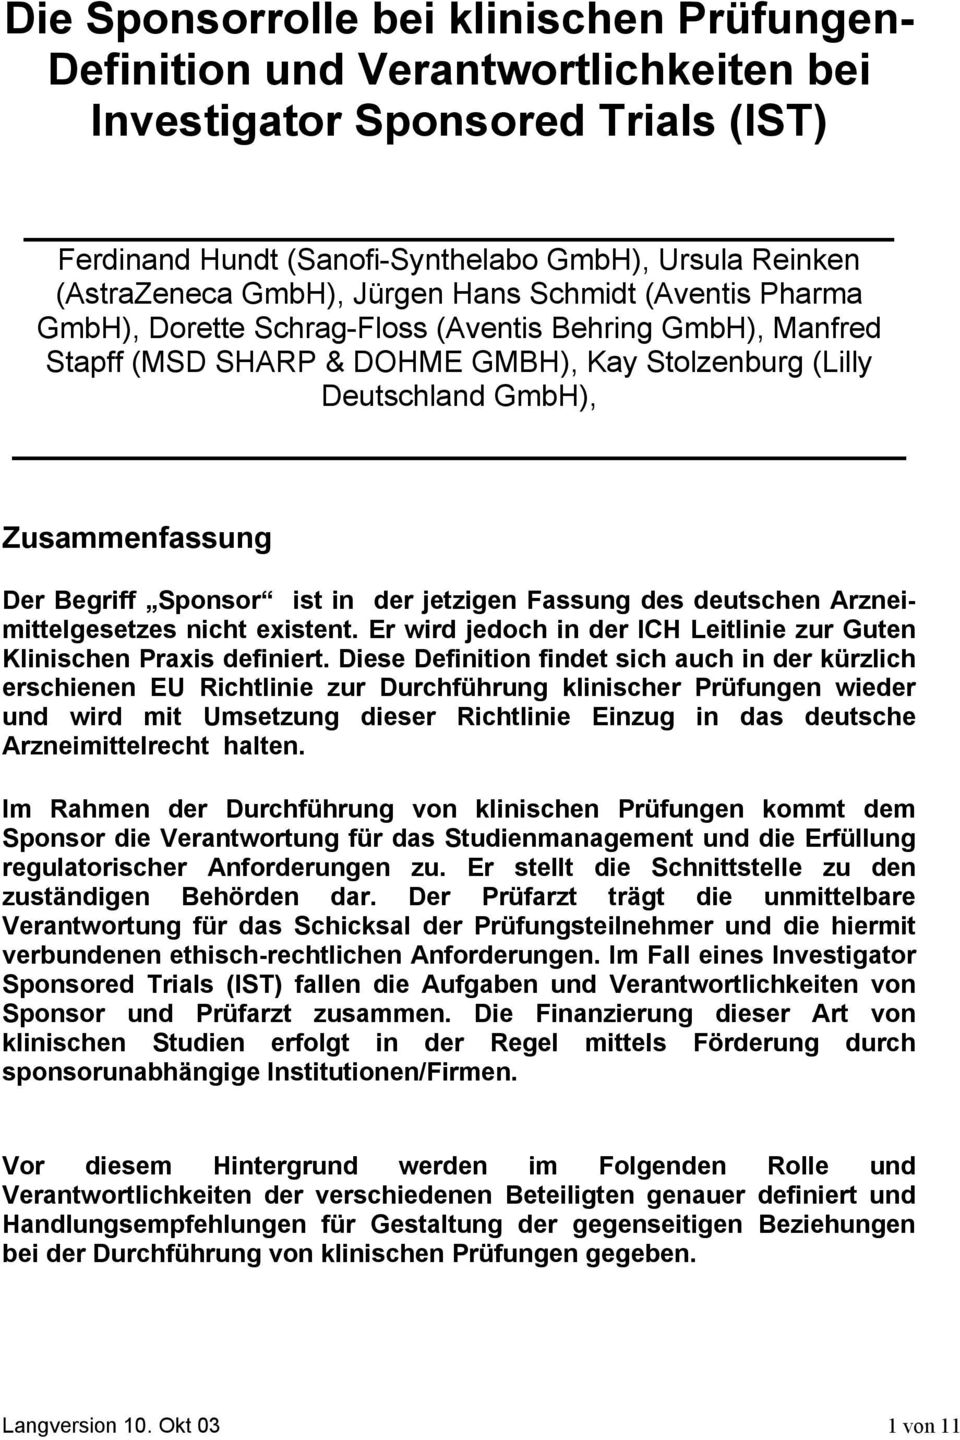 Sponsor ist in der jetzigen Fassung des deutschen Arzneimittelgesetzes nicht existent. Er wird jedoch in der ICH Leitlinie zur Guten Klinischen Praxis definiert.